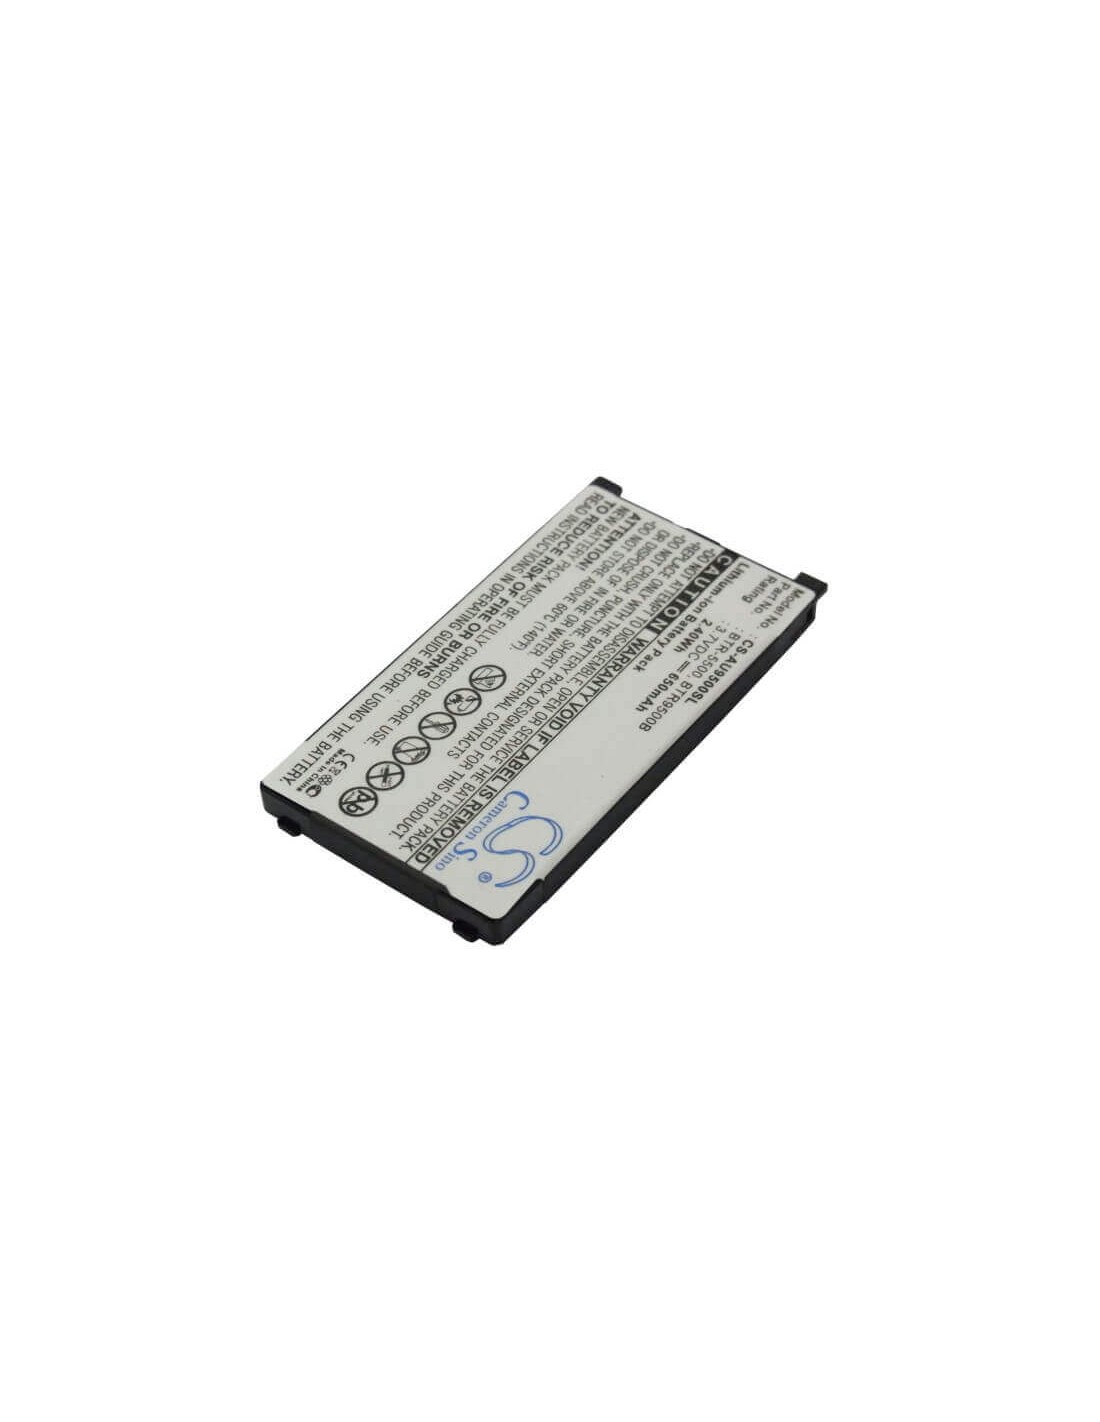 Battery for Audiovox CDM-9500 3.7V, 650mAh - 2.41Wh